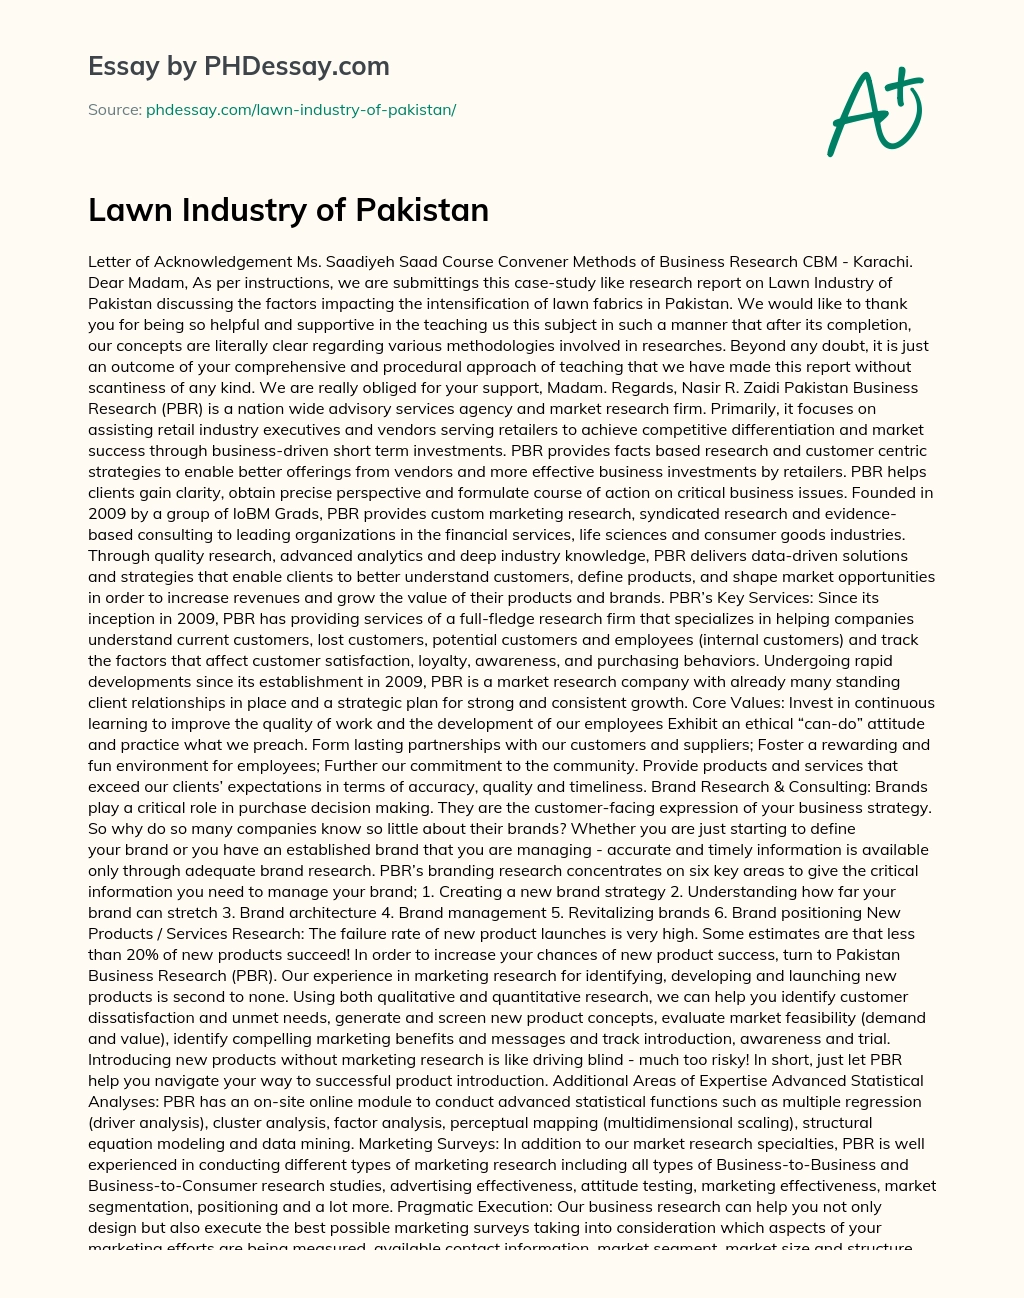 Lawn Industry of Pakistan essay